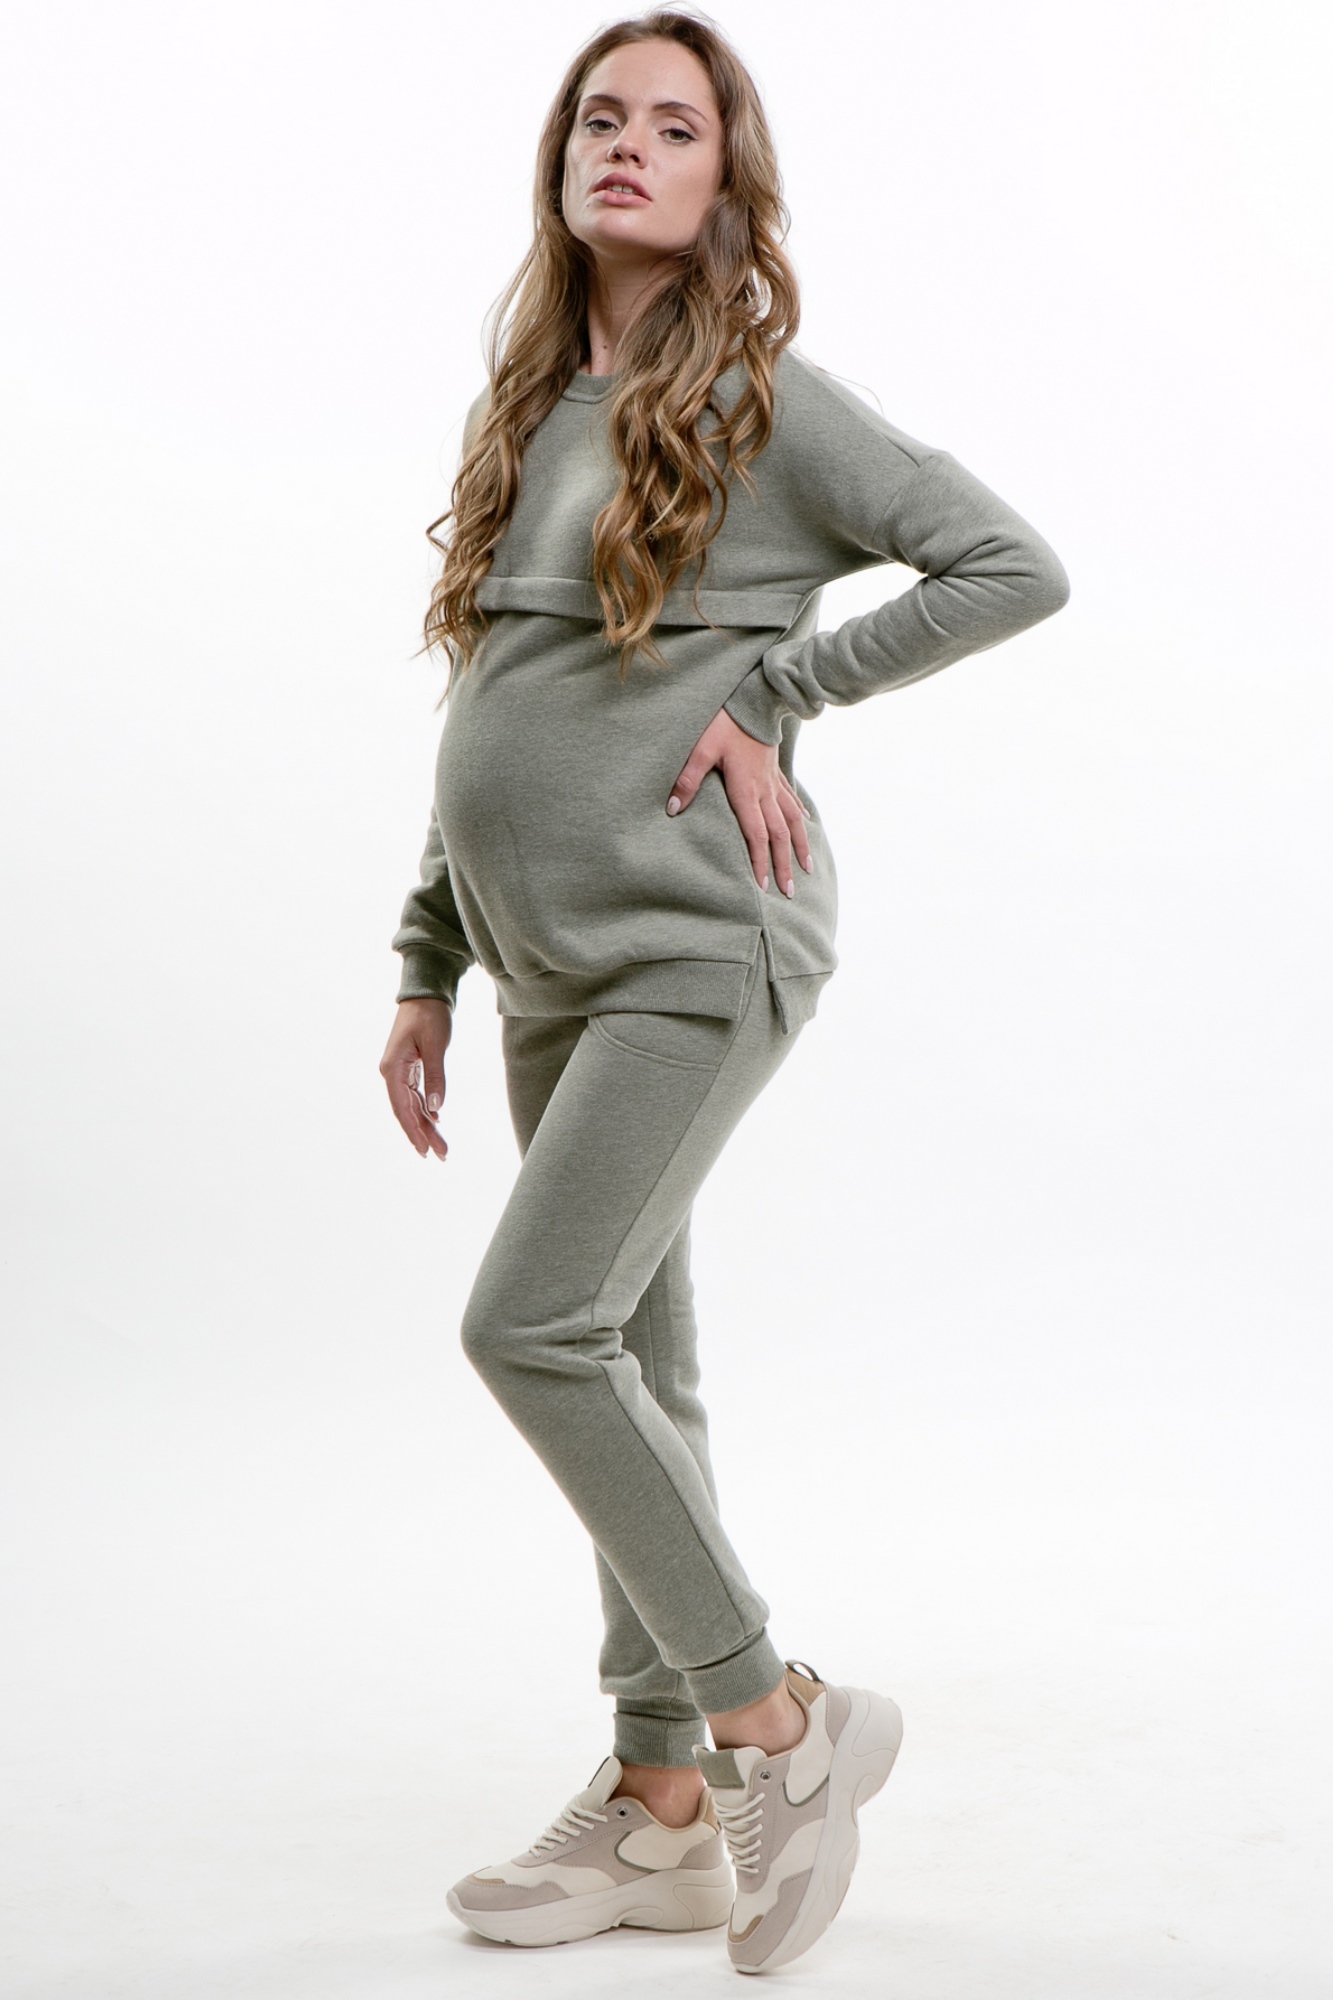 Мода для беременных как стильно выглядеть даже на большом сроке